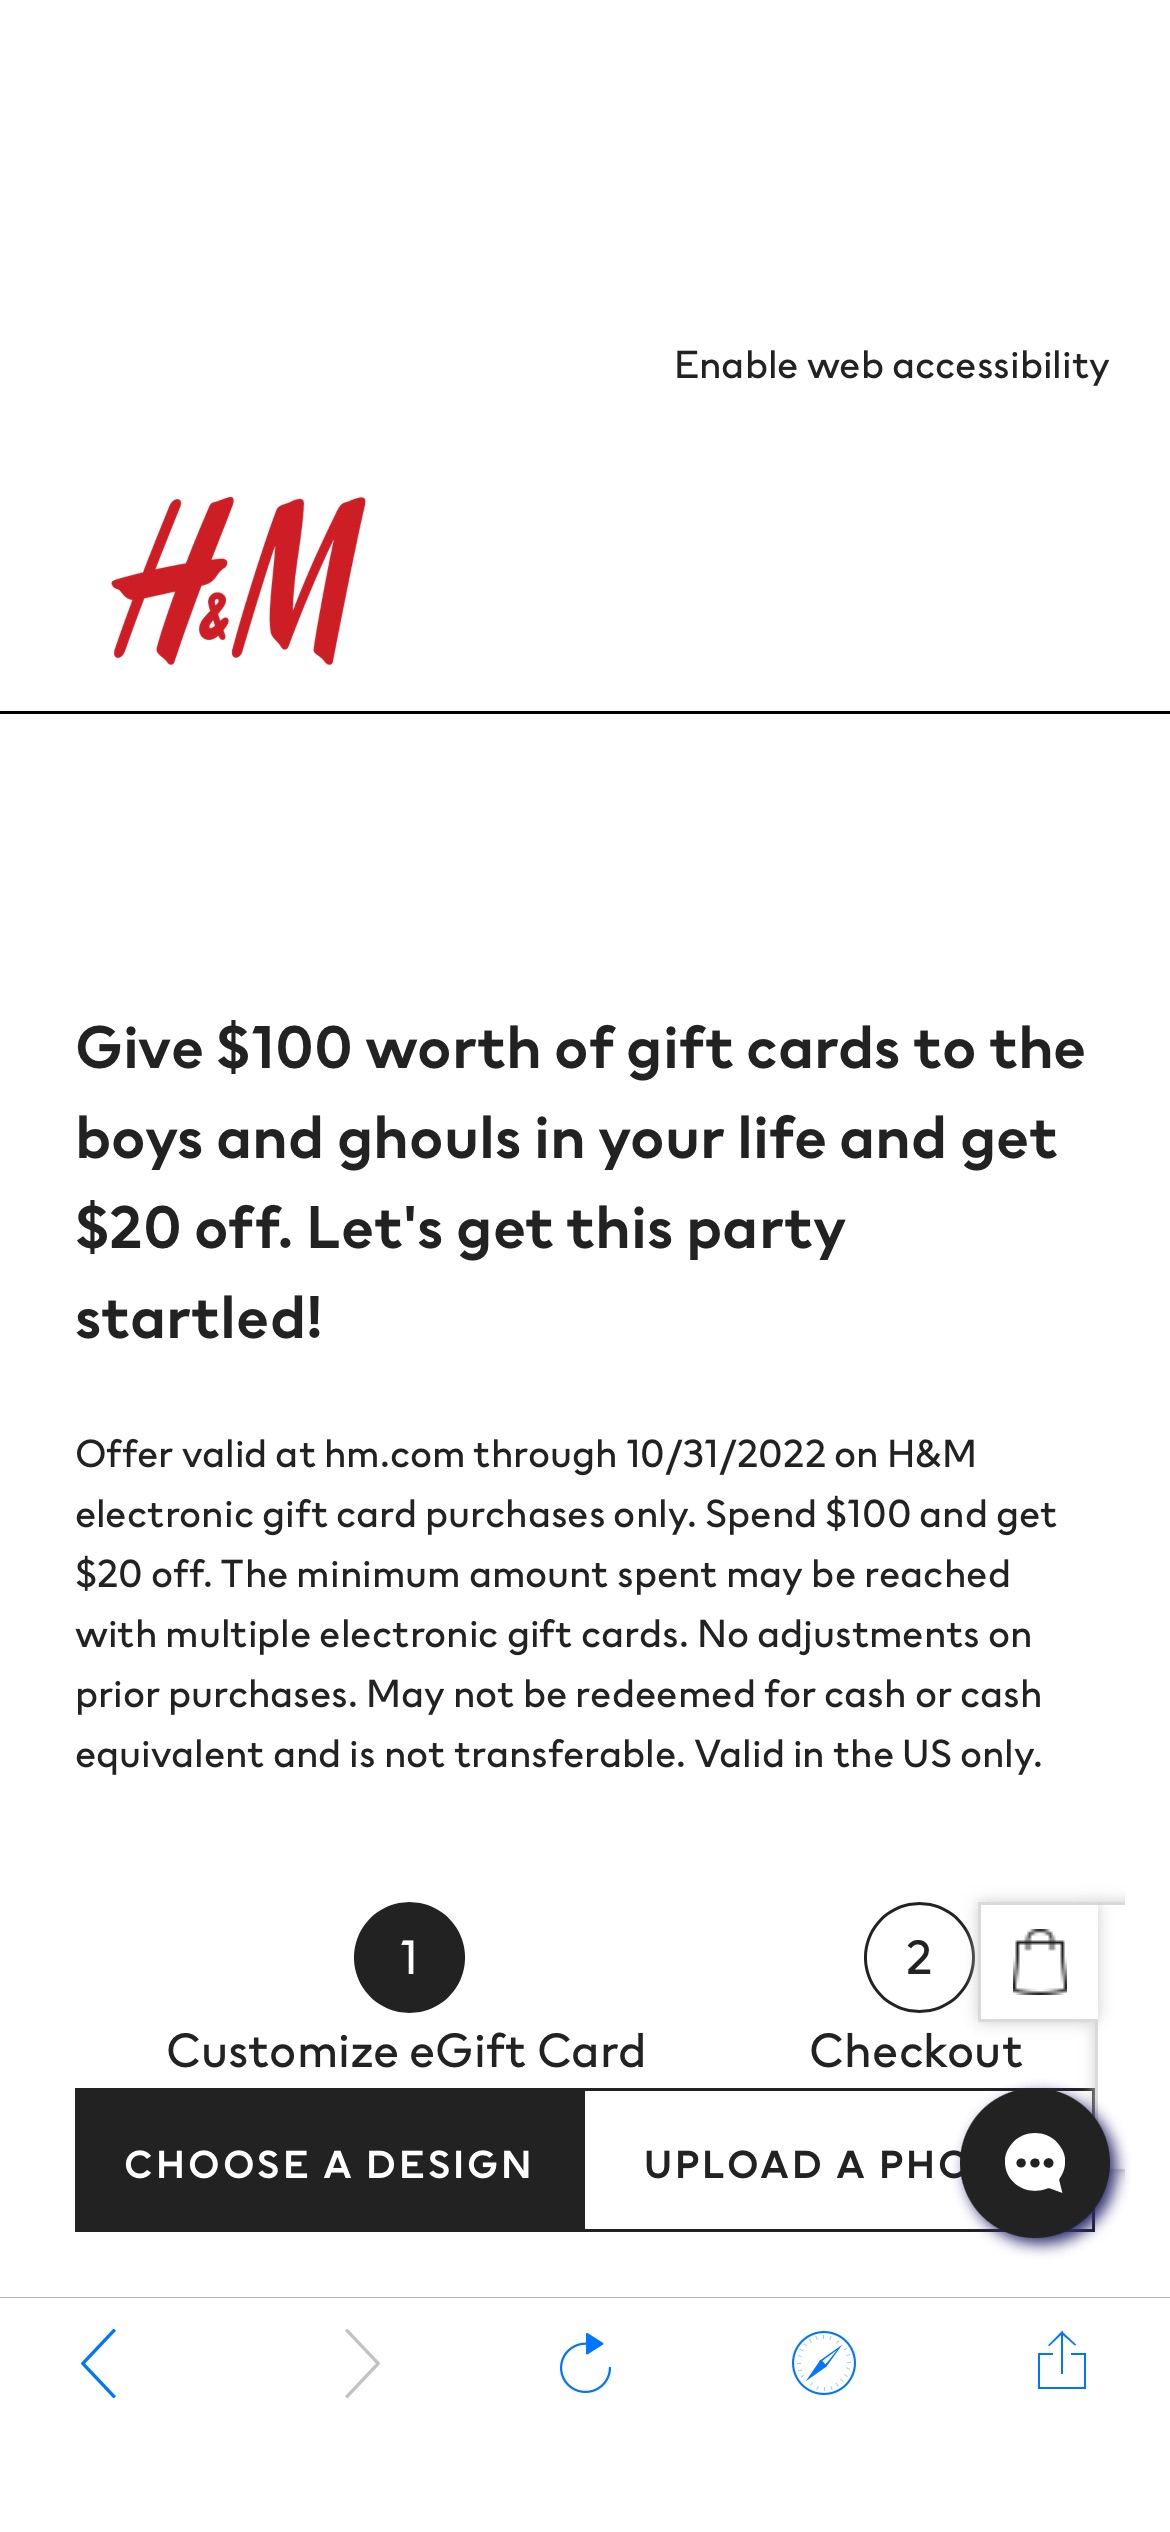 H&M USA Gift Cards满减活动